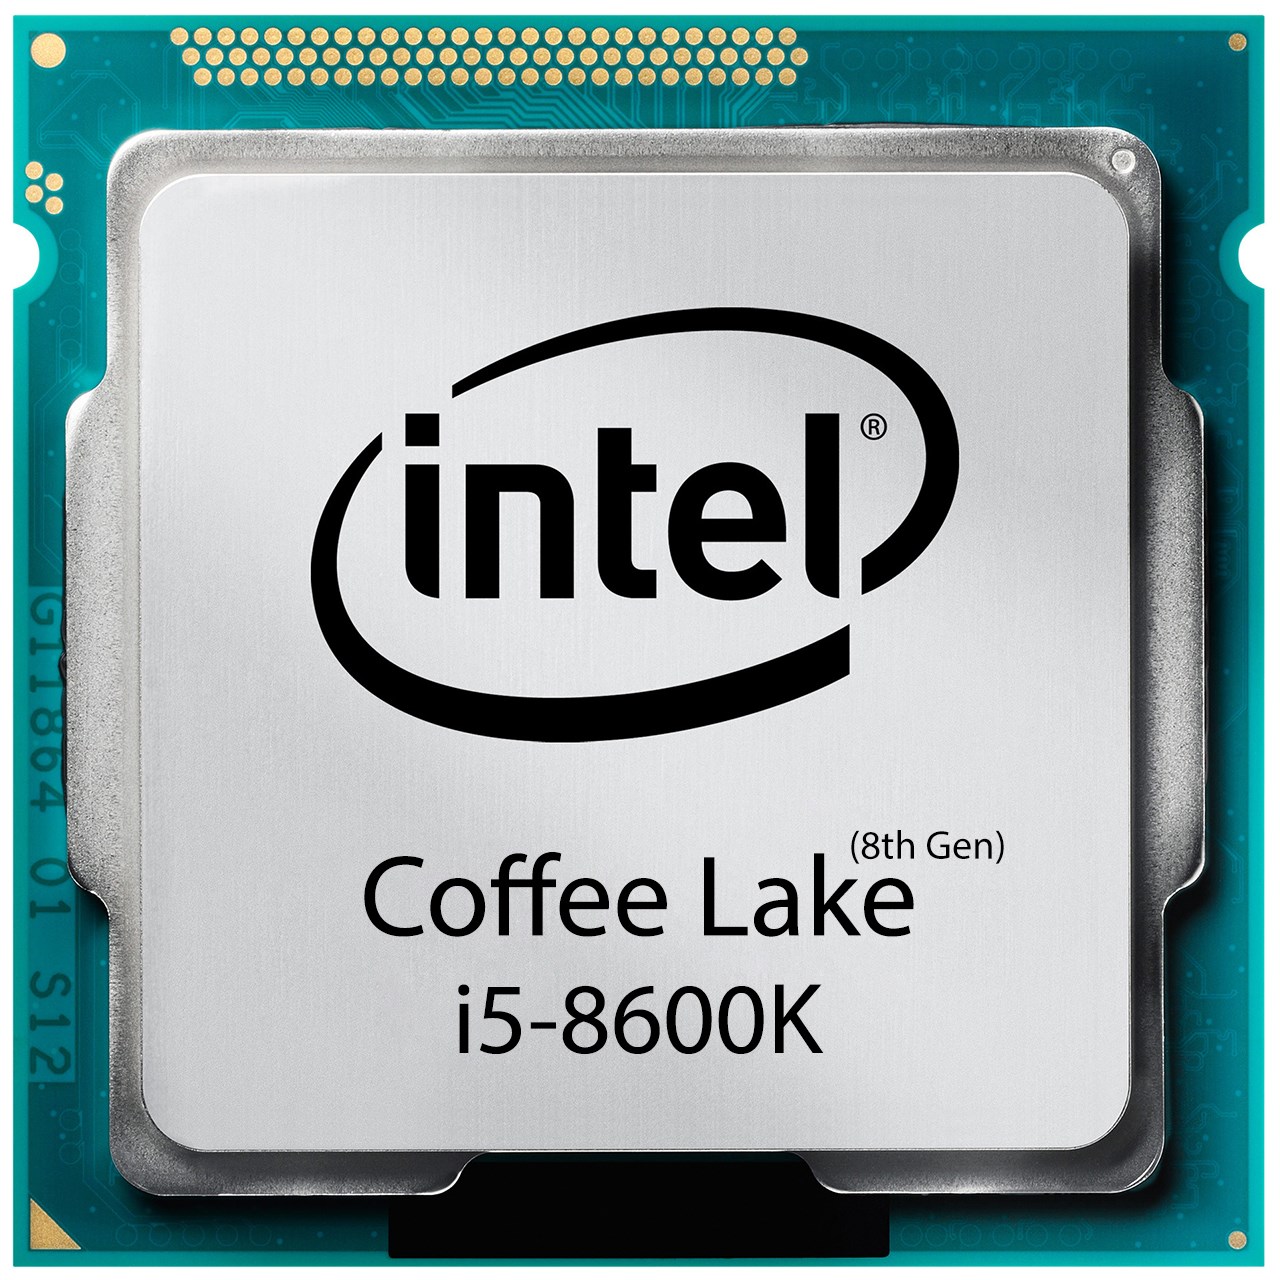 پردازنده مرکزی اینتل سری Coffee Lake مدل i5-8600K